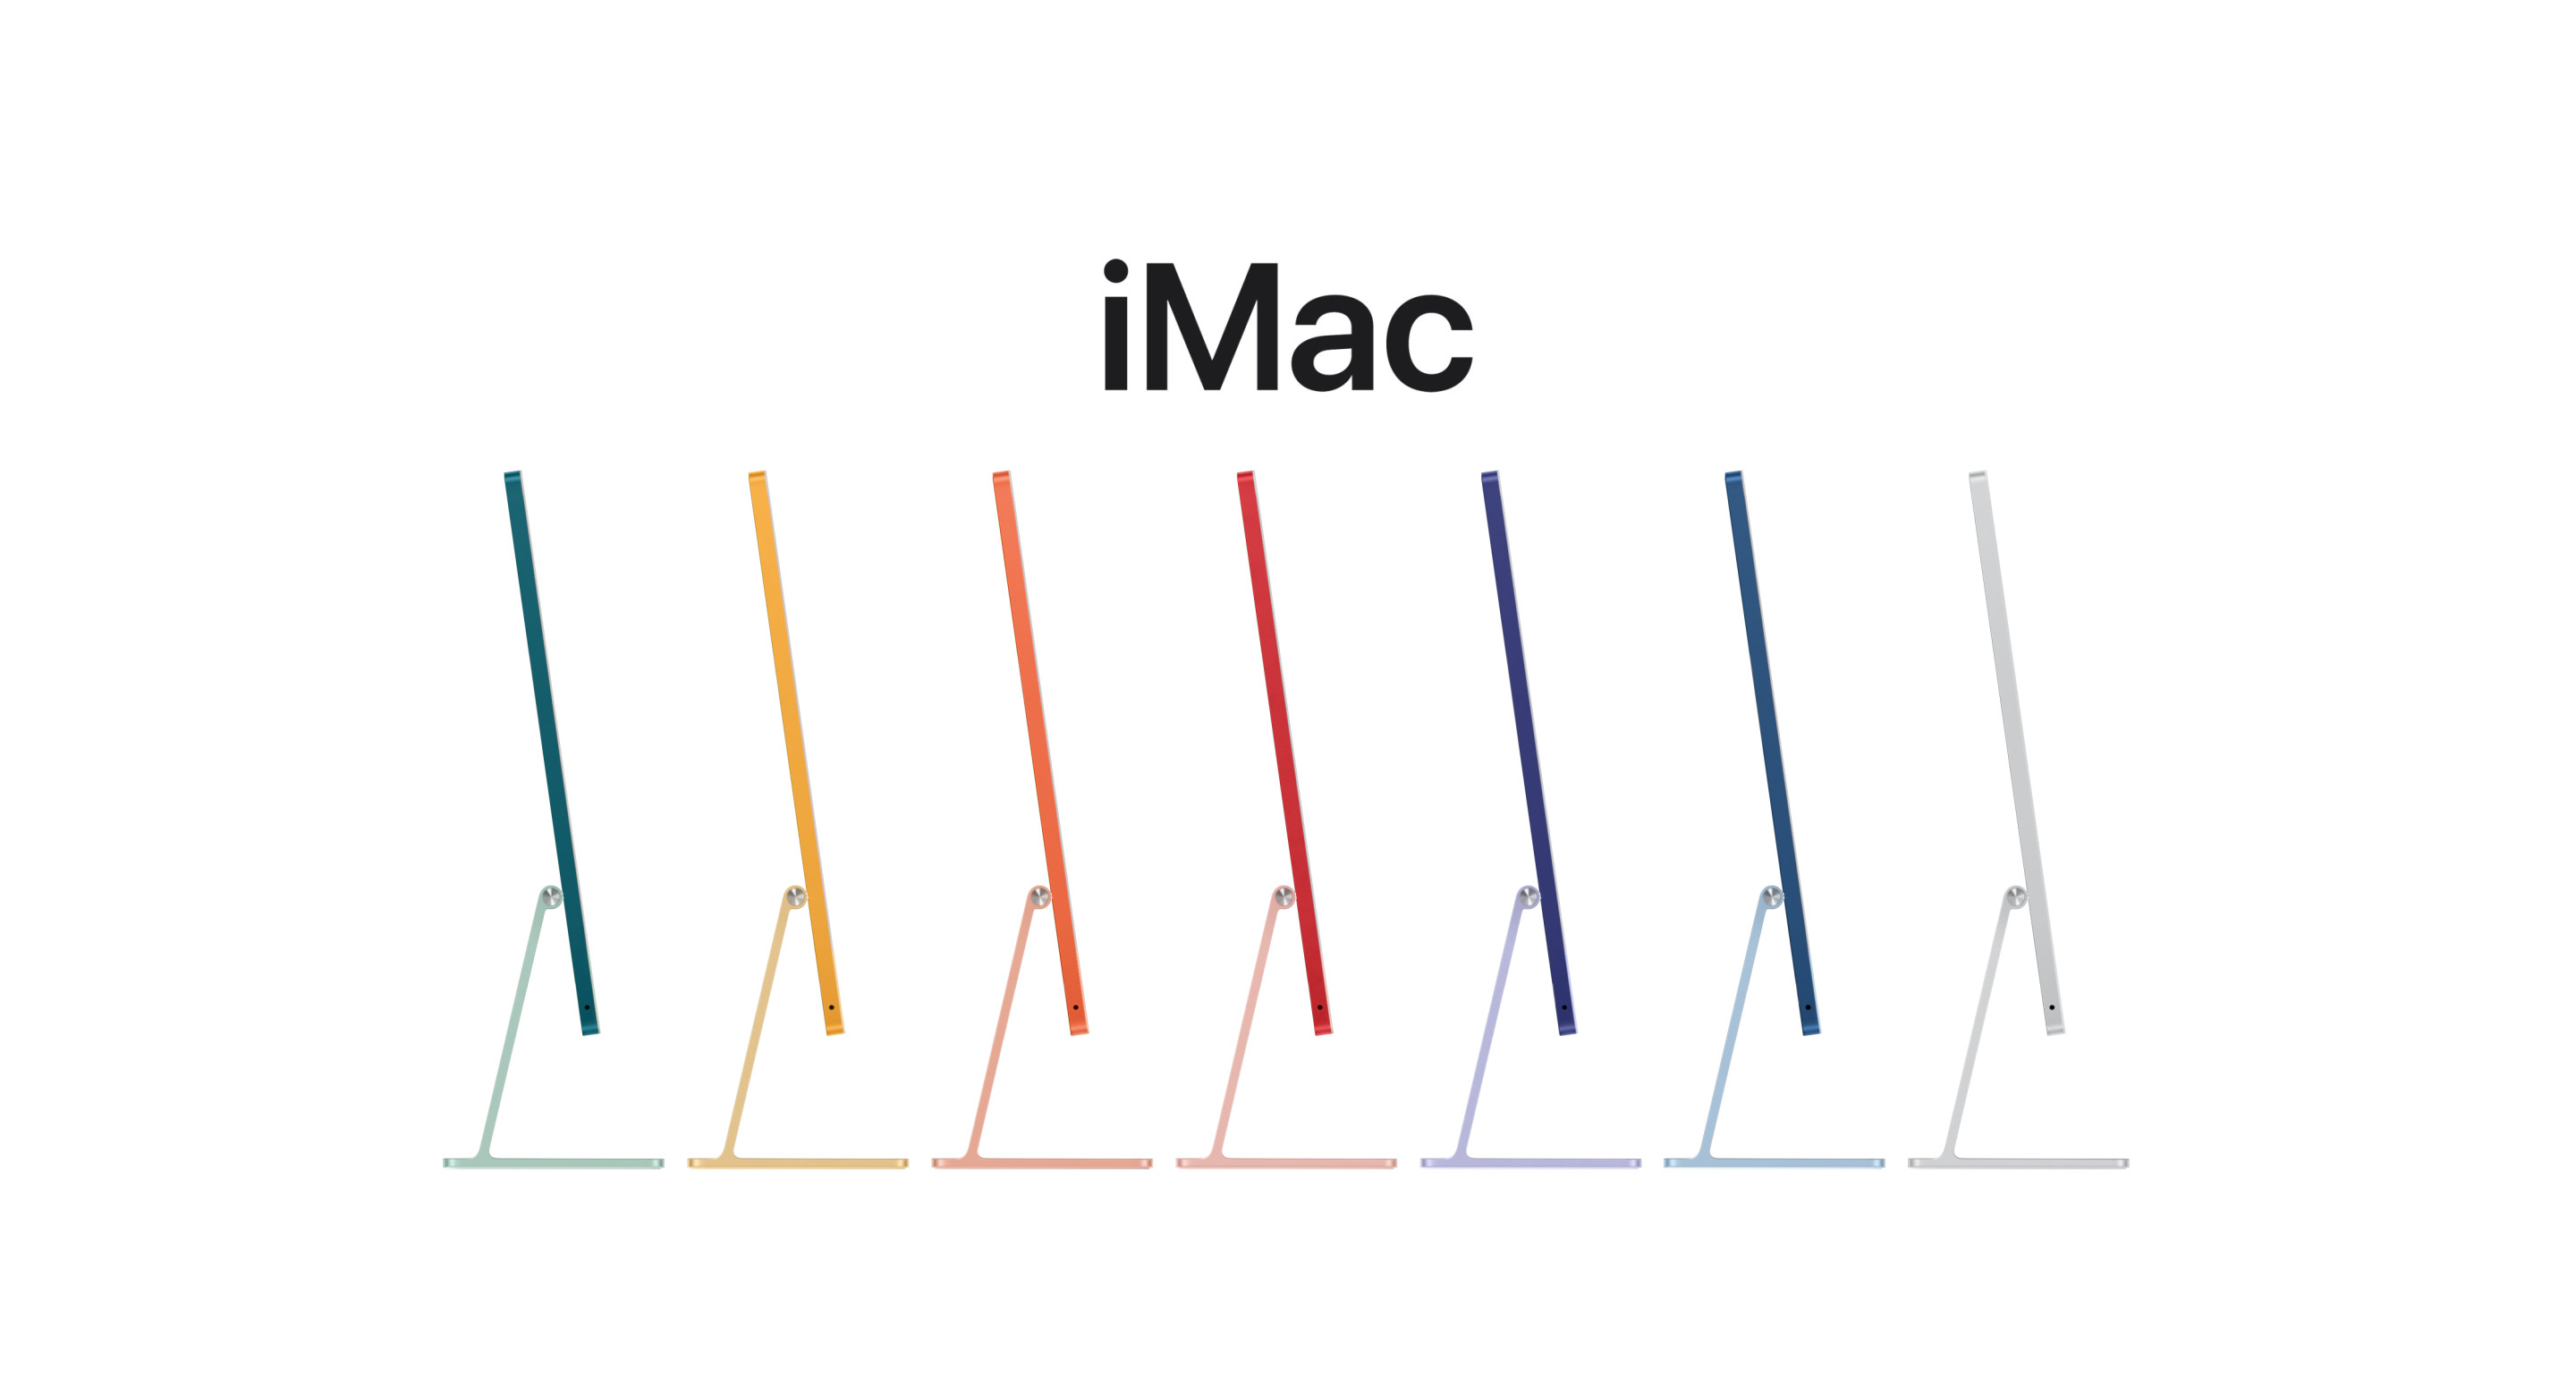 رسم متحرك لجميع ألوان iMac‏ السبعة